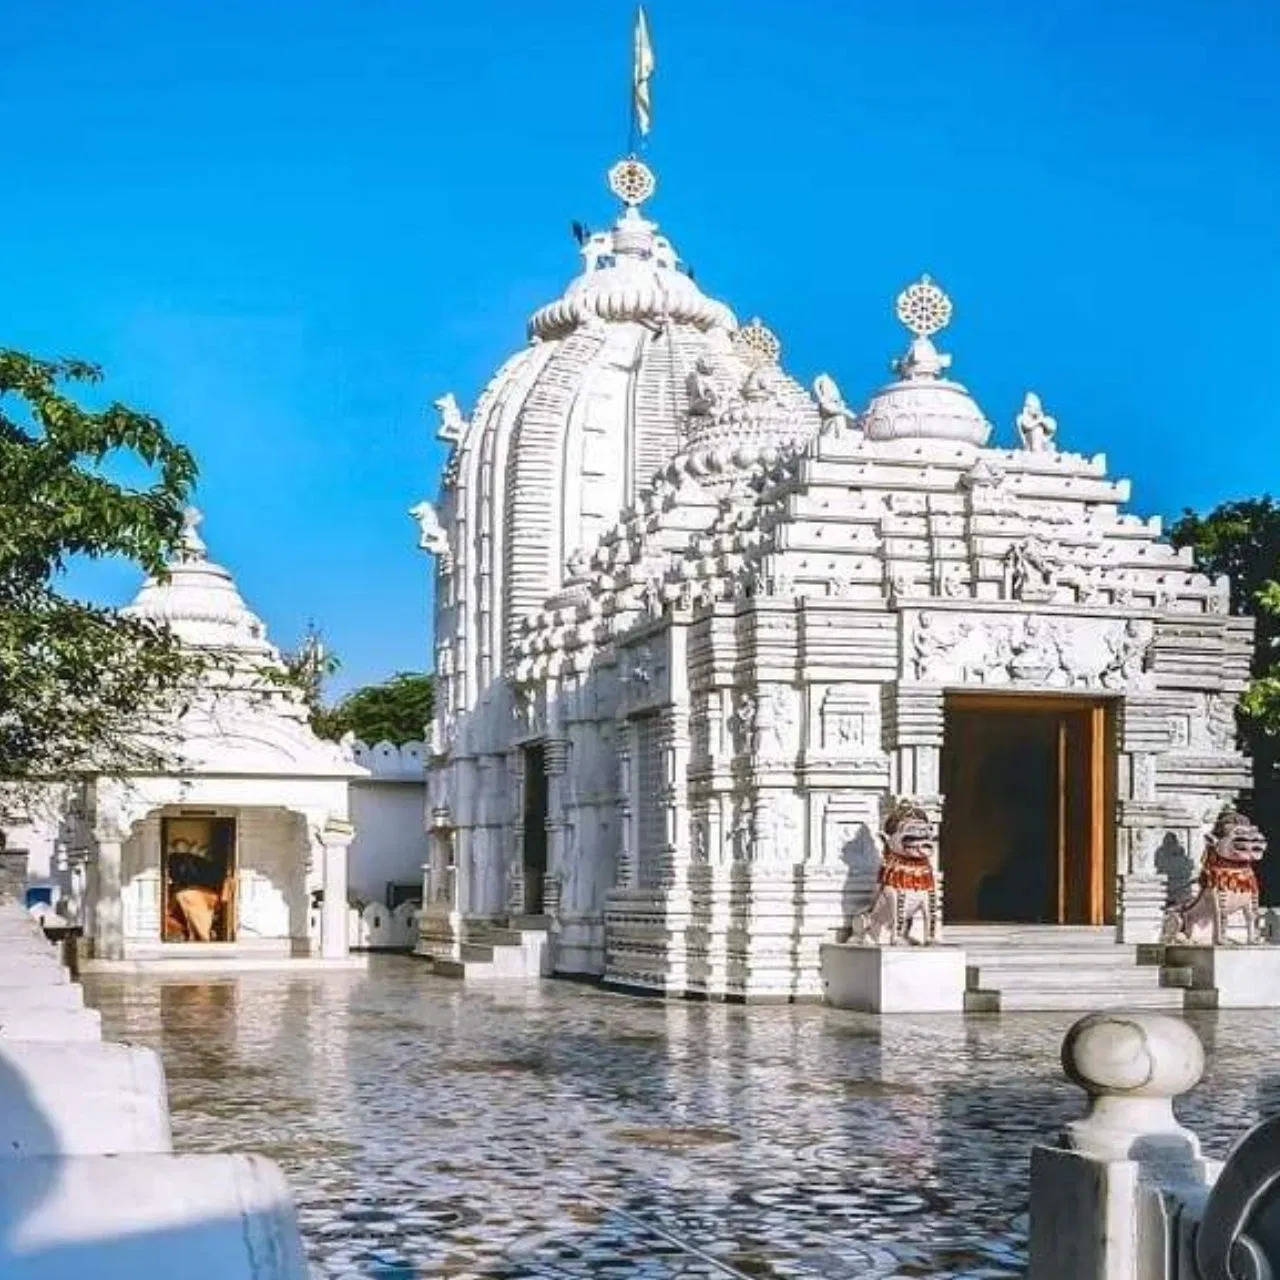 सिर्फ पुरी ही नहीं भारत की इन जगहों पर भी मौजूद हैं भगवान जगन्नाथ के प्रसिद्ध मंदिर, इस जून में आप भी करें परिवार के साथ दर्शन की प्लानिंग